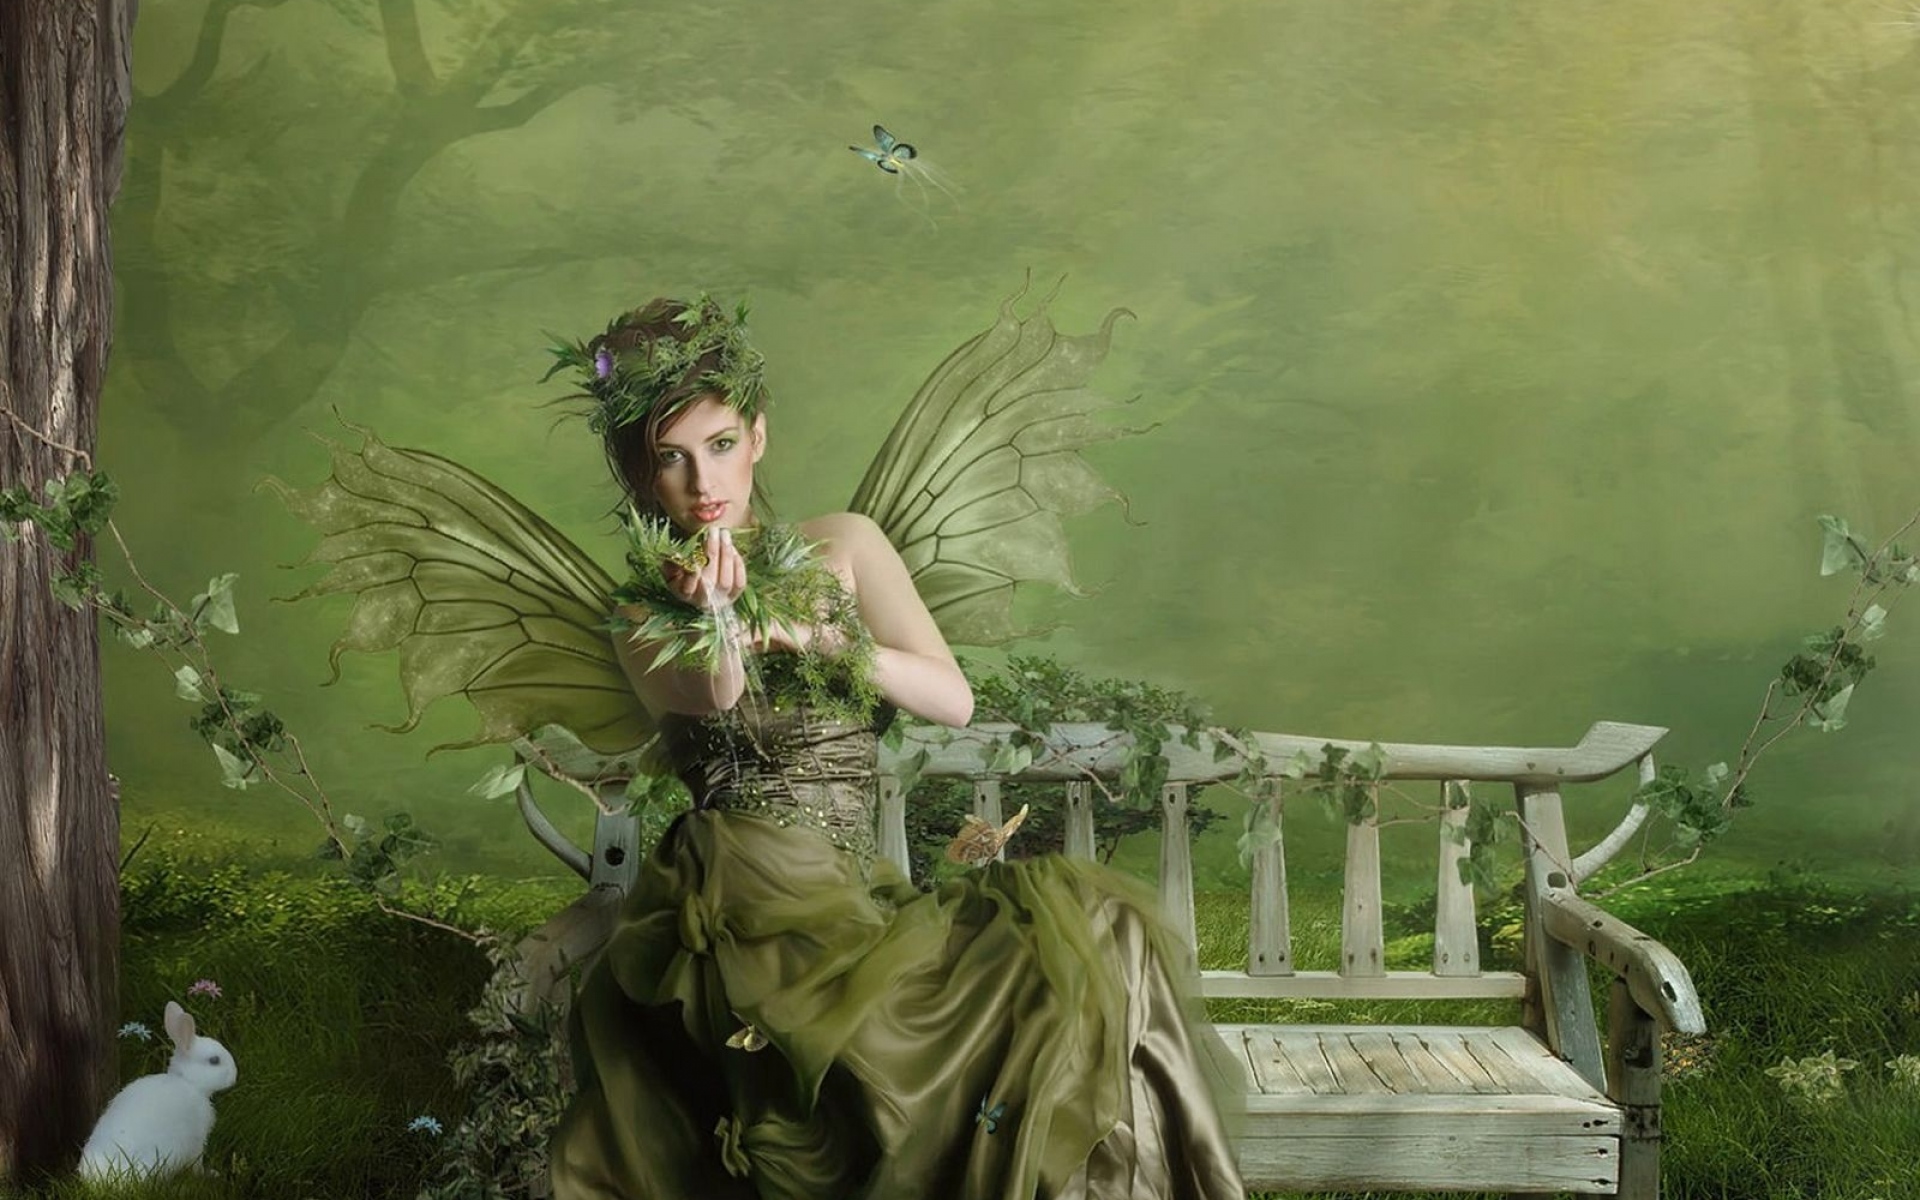 Картинки Девушка, фея, дерево, магазин, зеленый фото и обои на рабочий стол